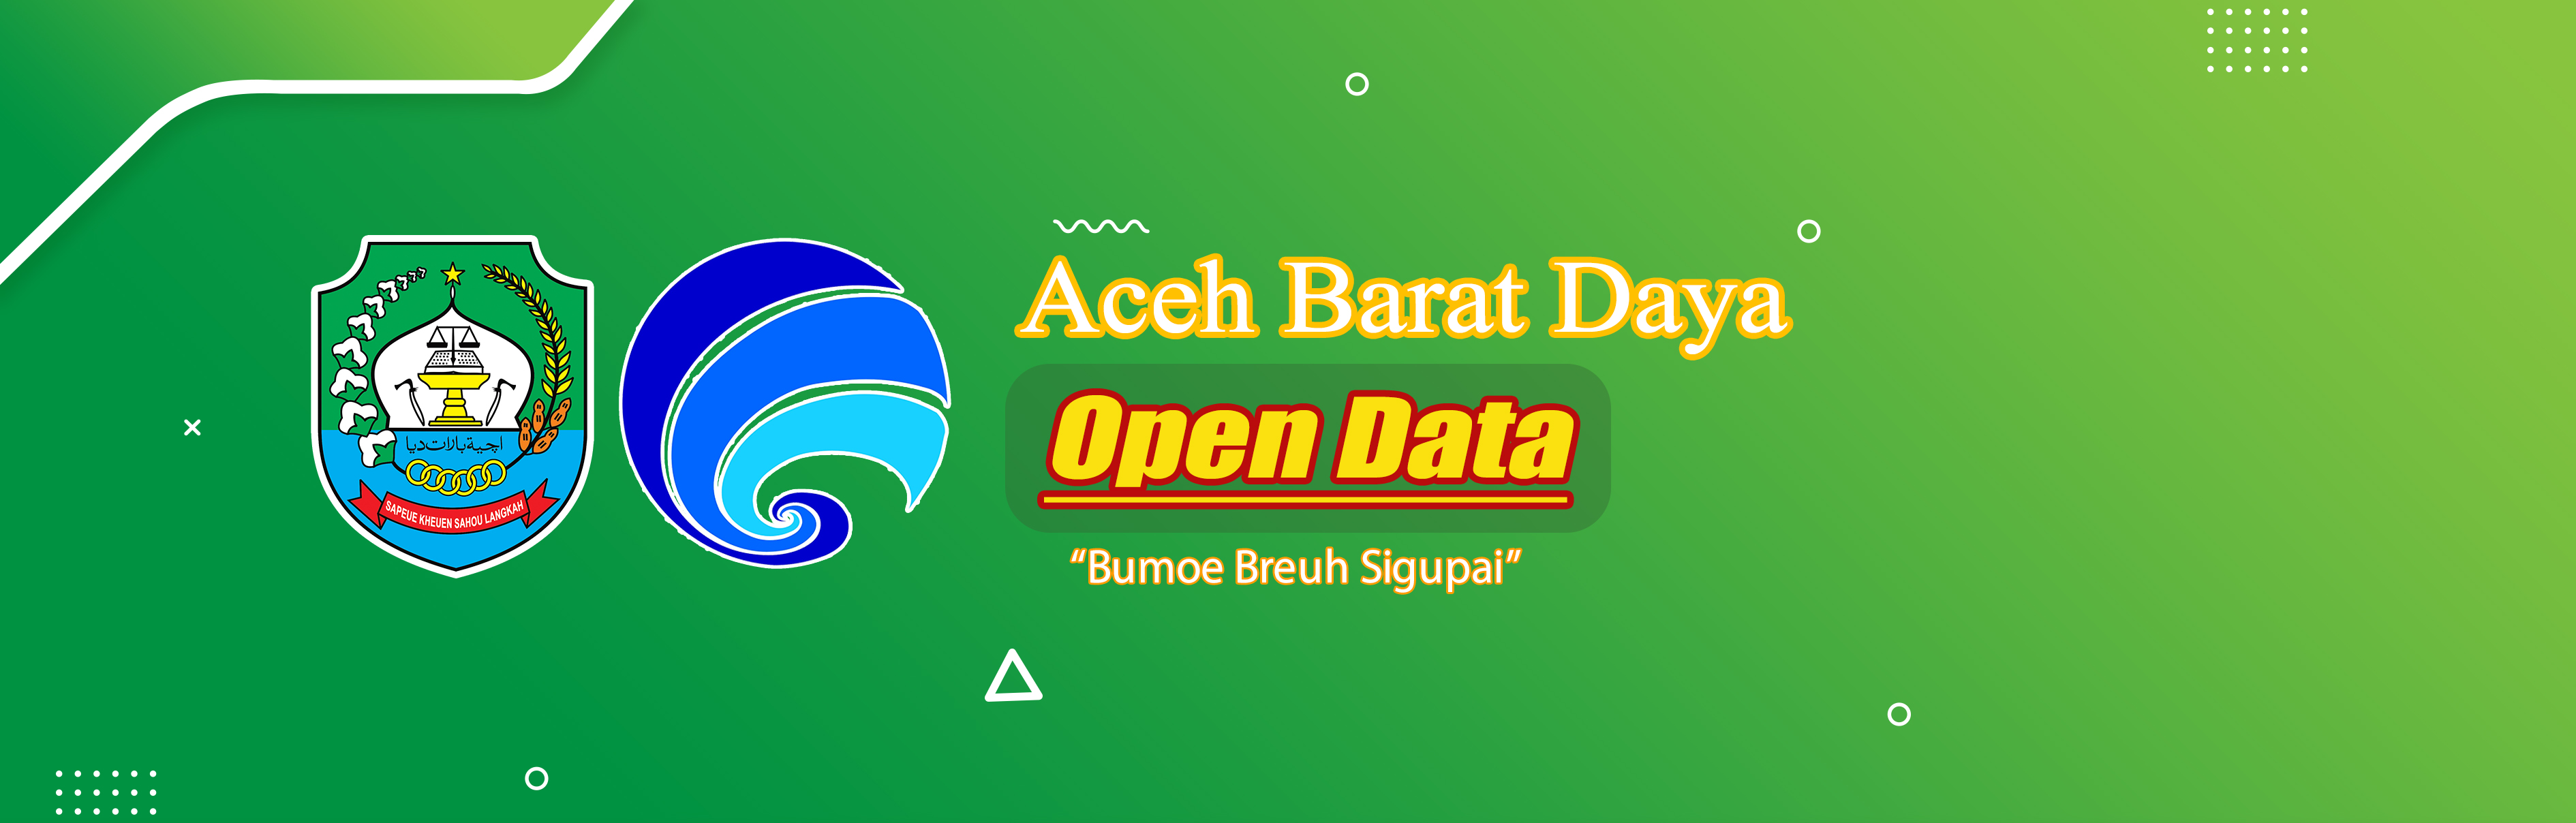 Open Data Aceh Barat Daya